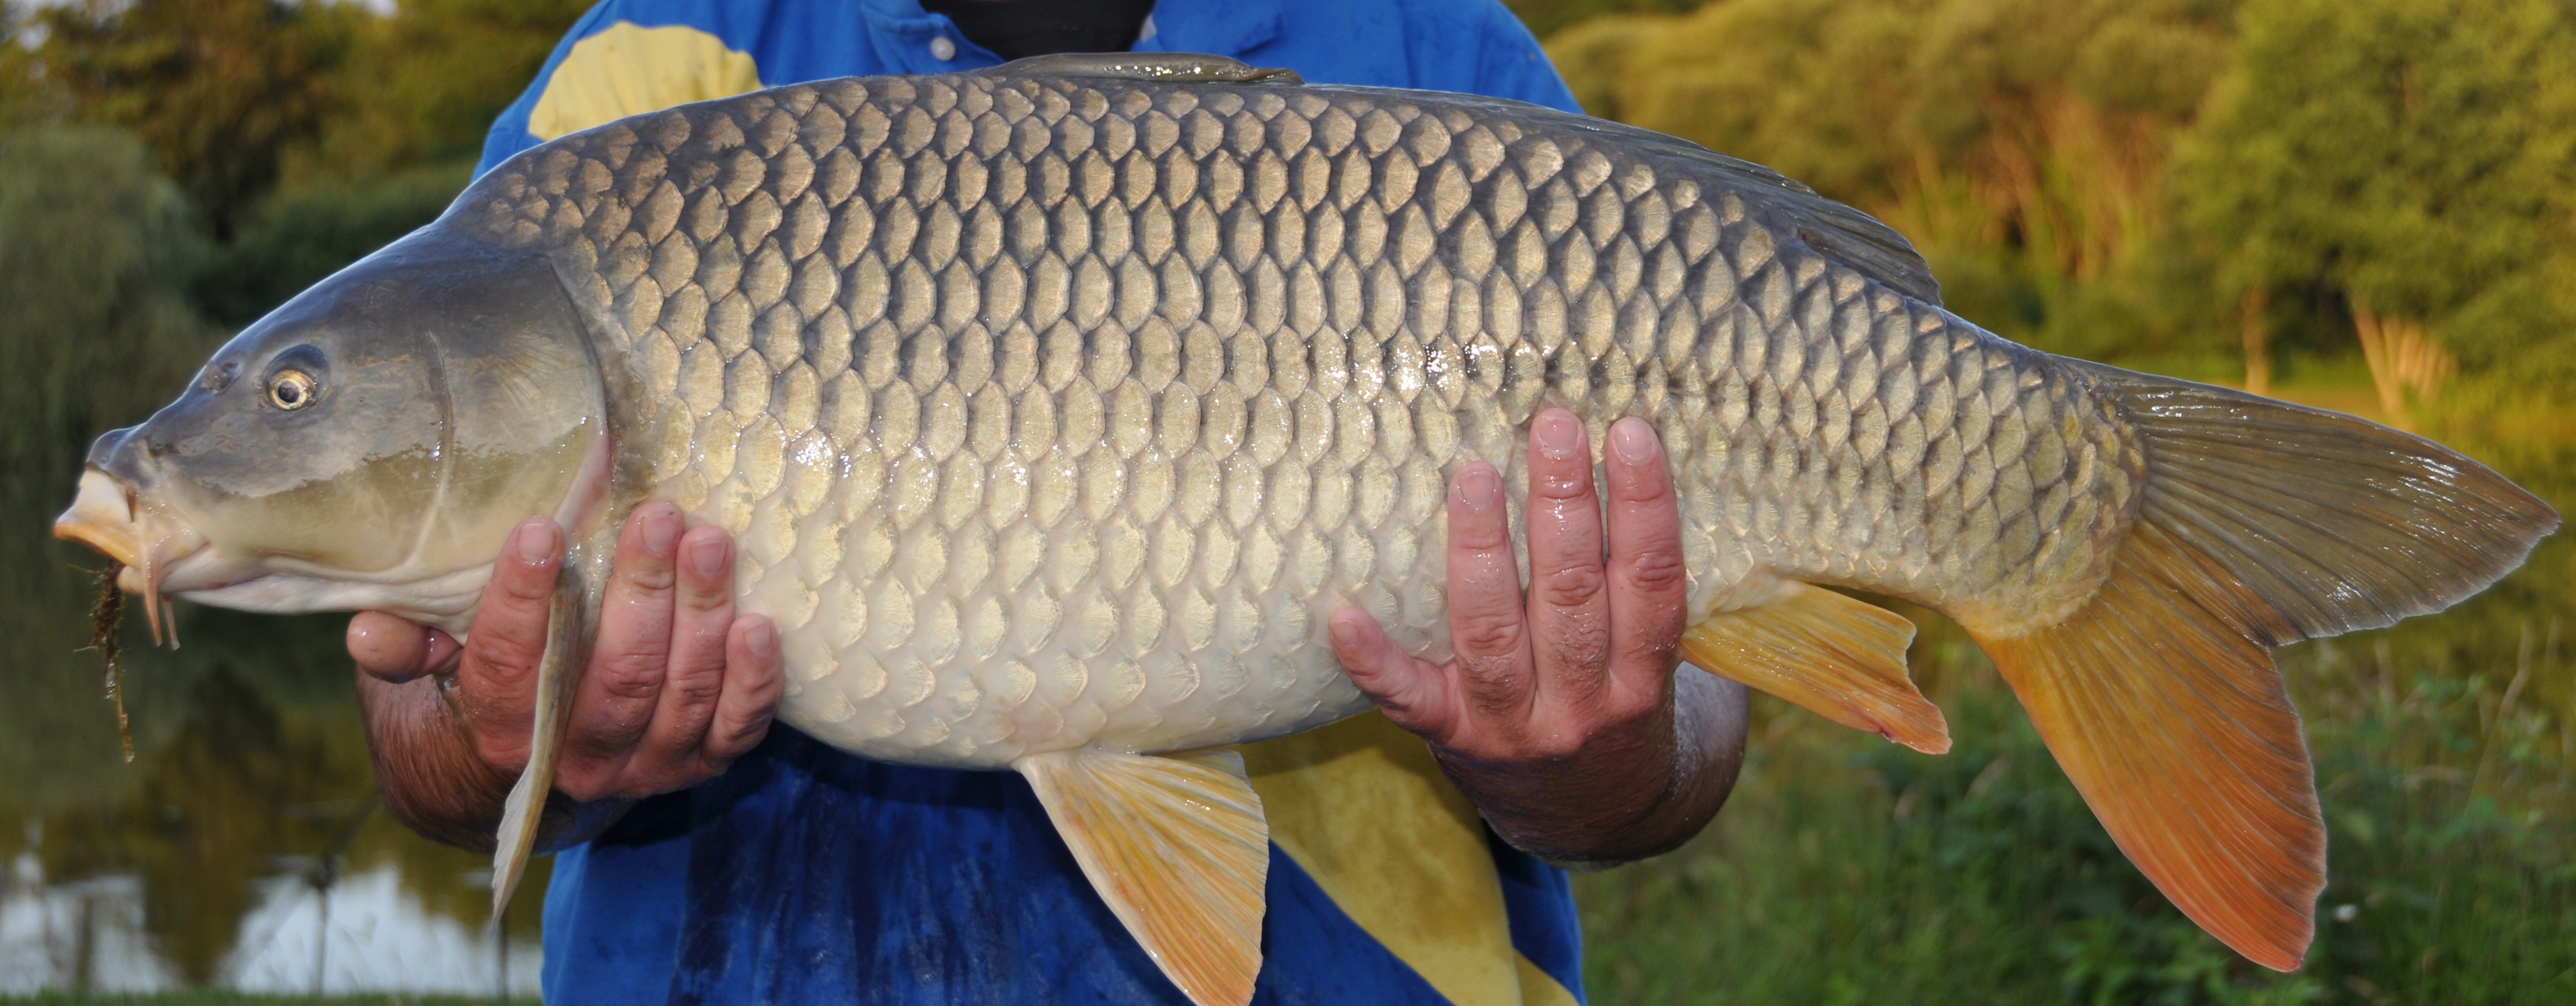 Large common carp caught at Etang de Azat-Chatenet fishing lake in France